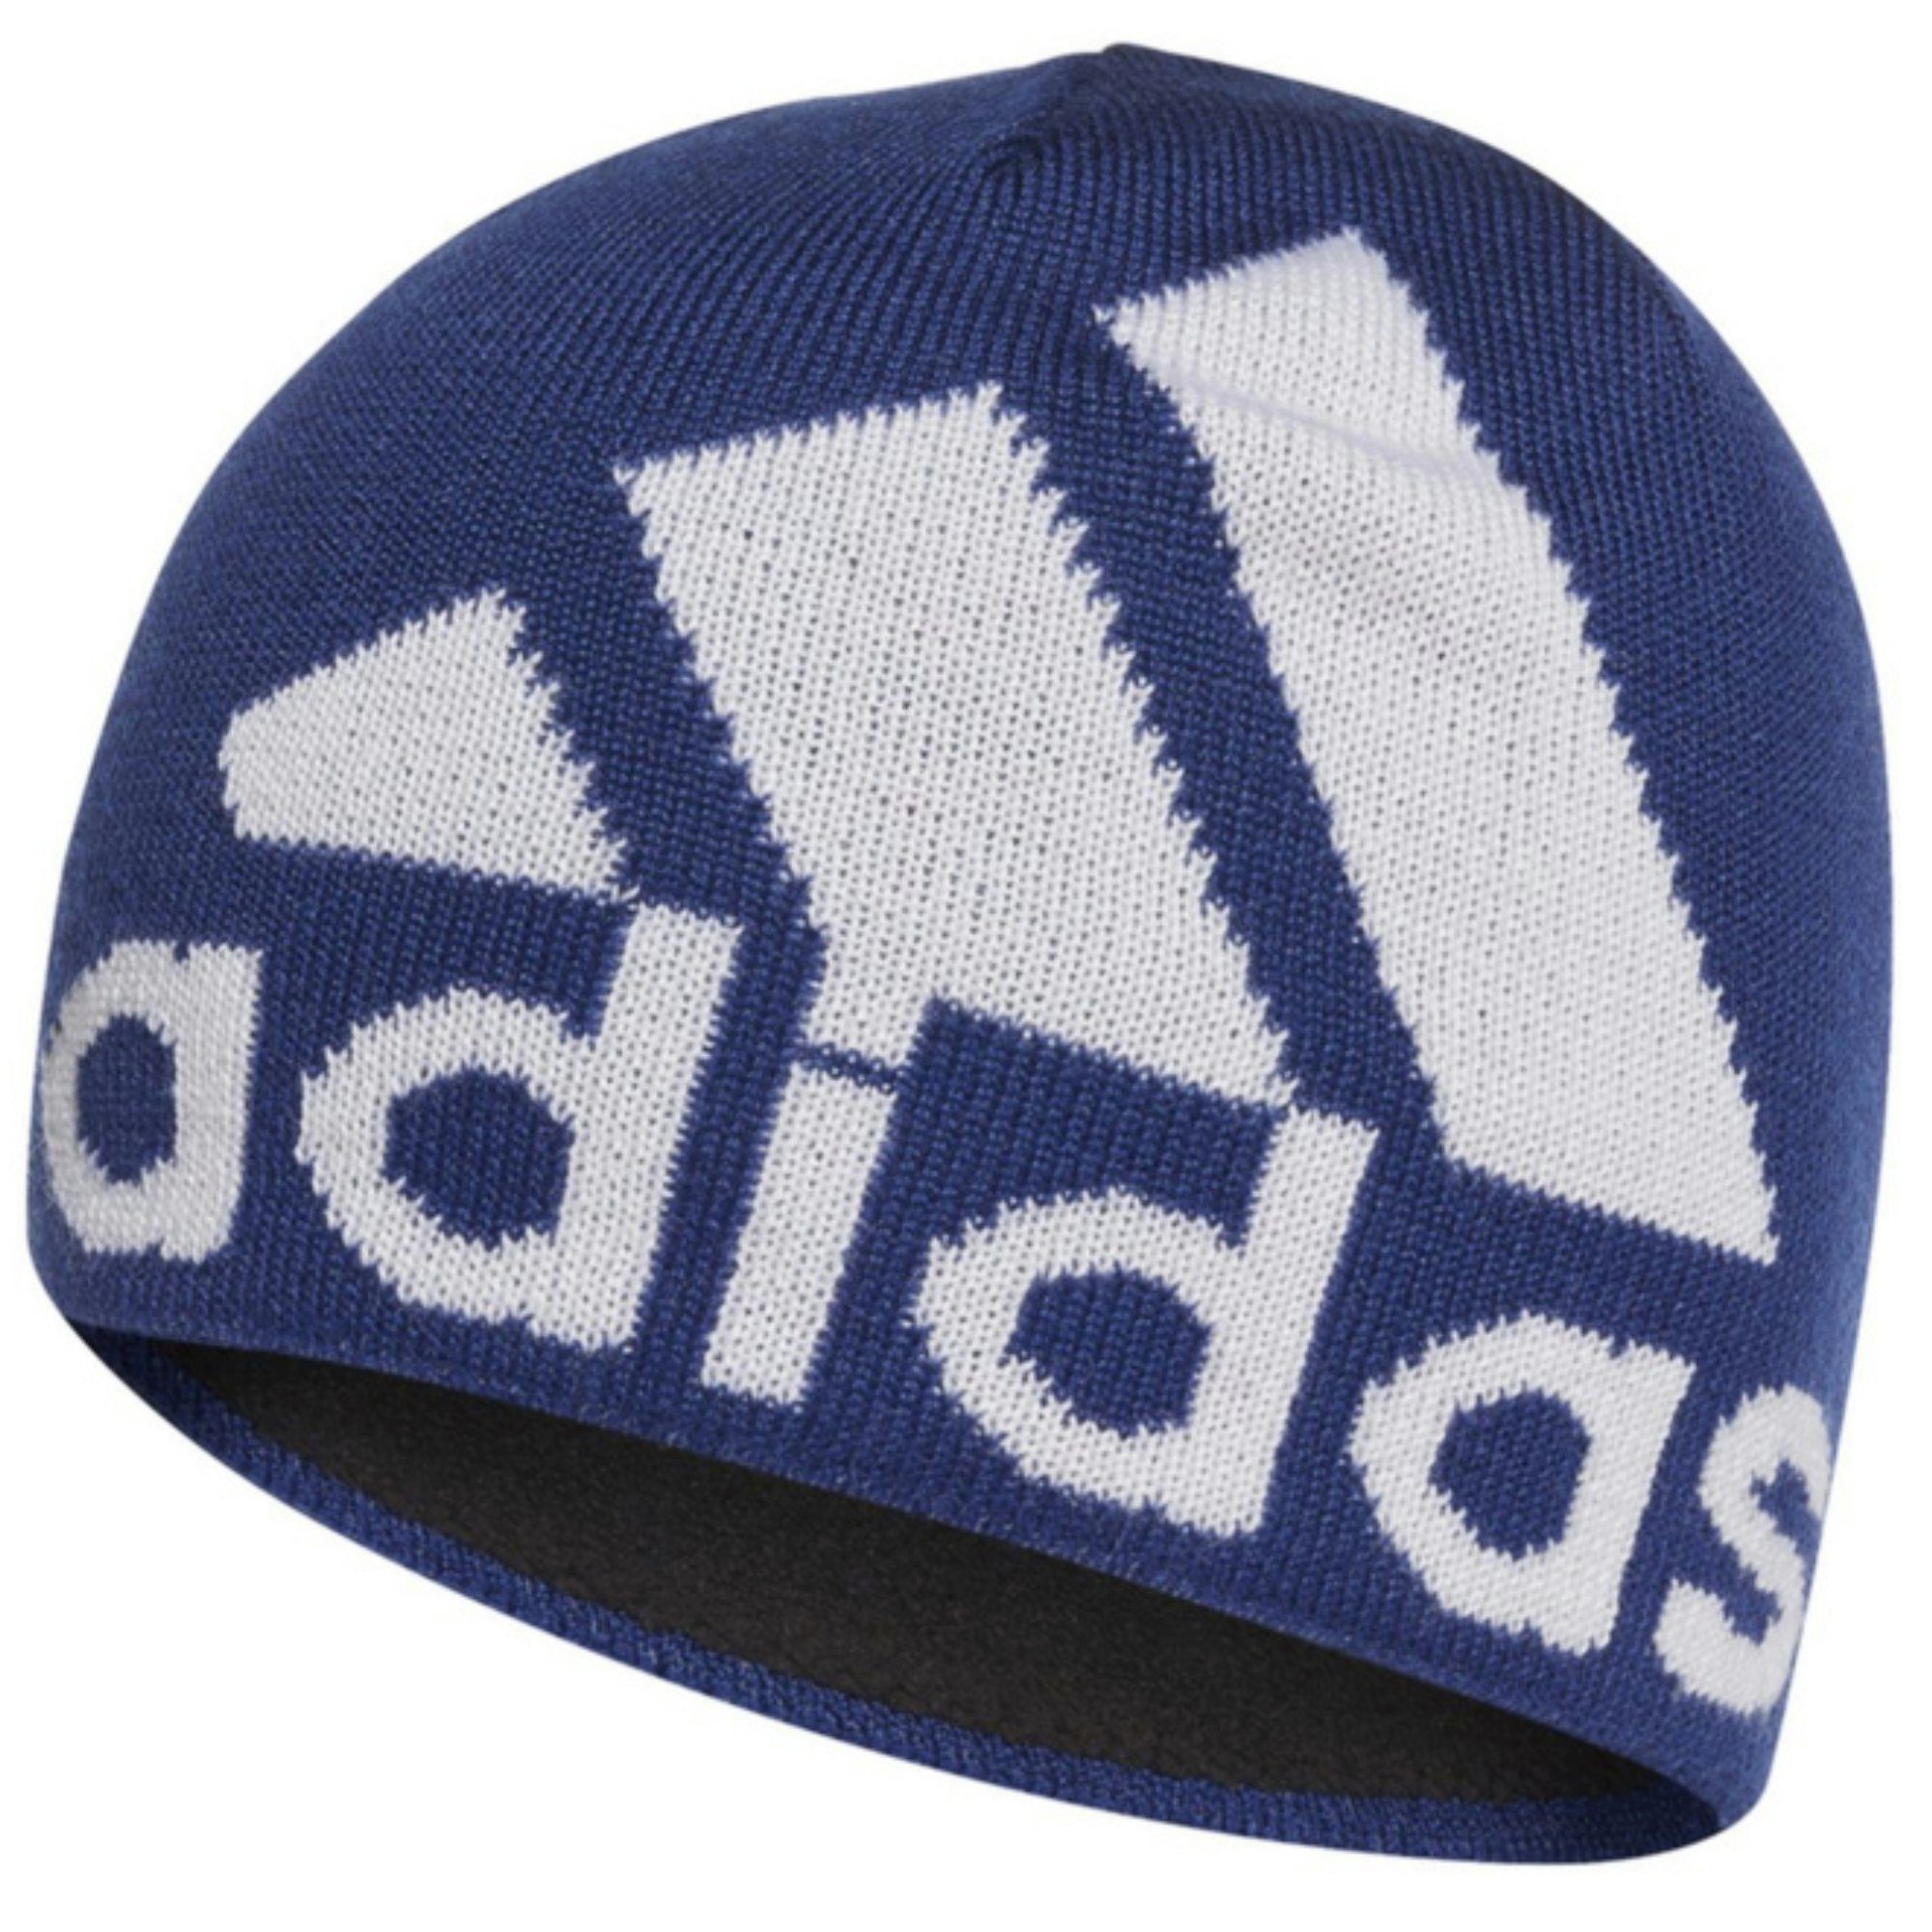 BIG BE blau/weiß A.R. Cap Baseball adidas LOG Sportswear